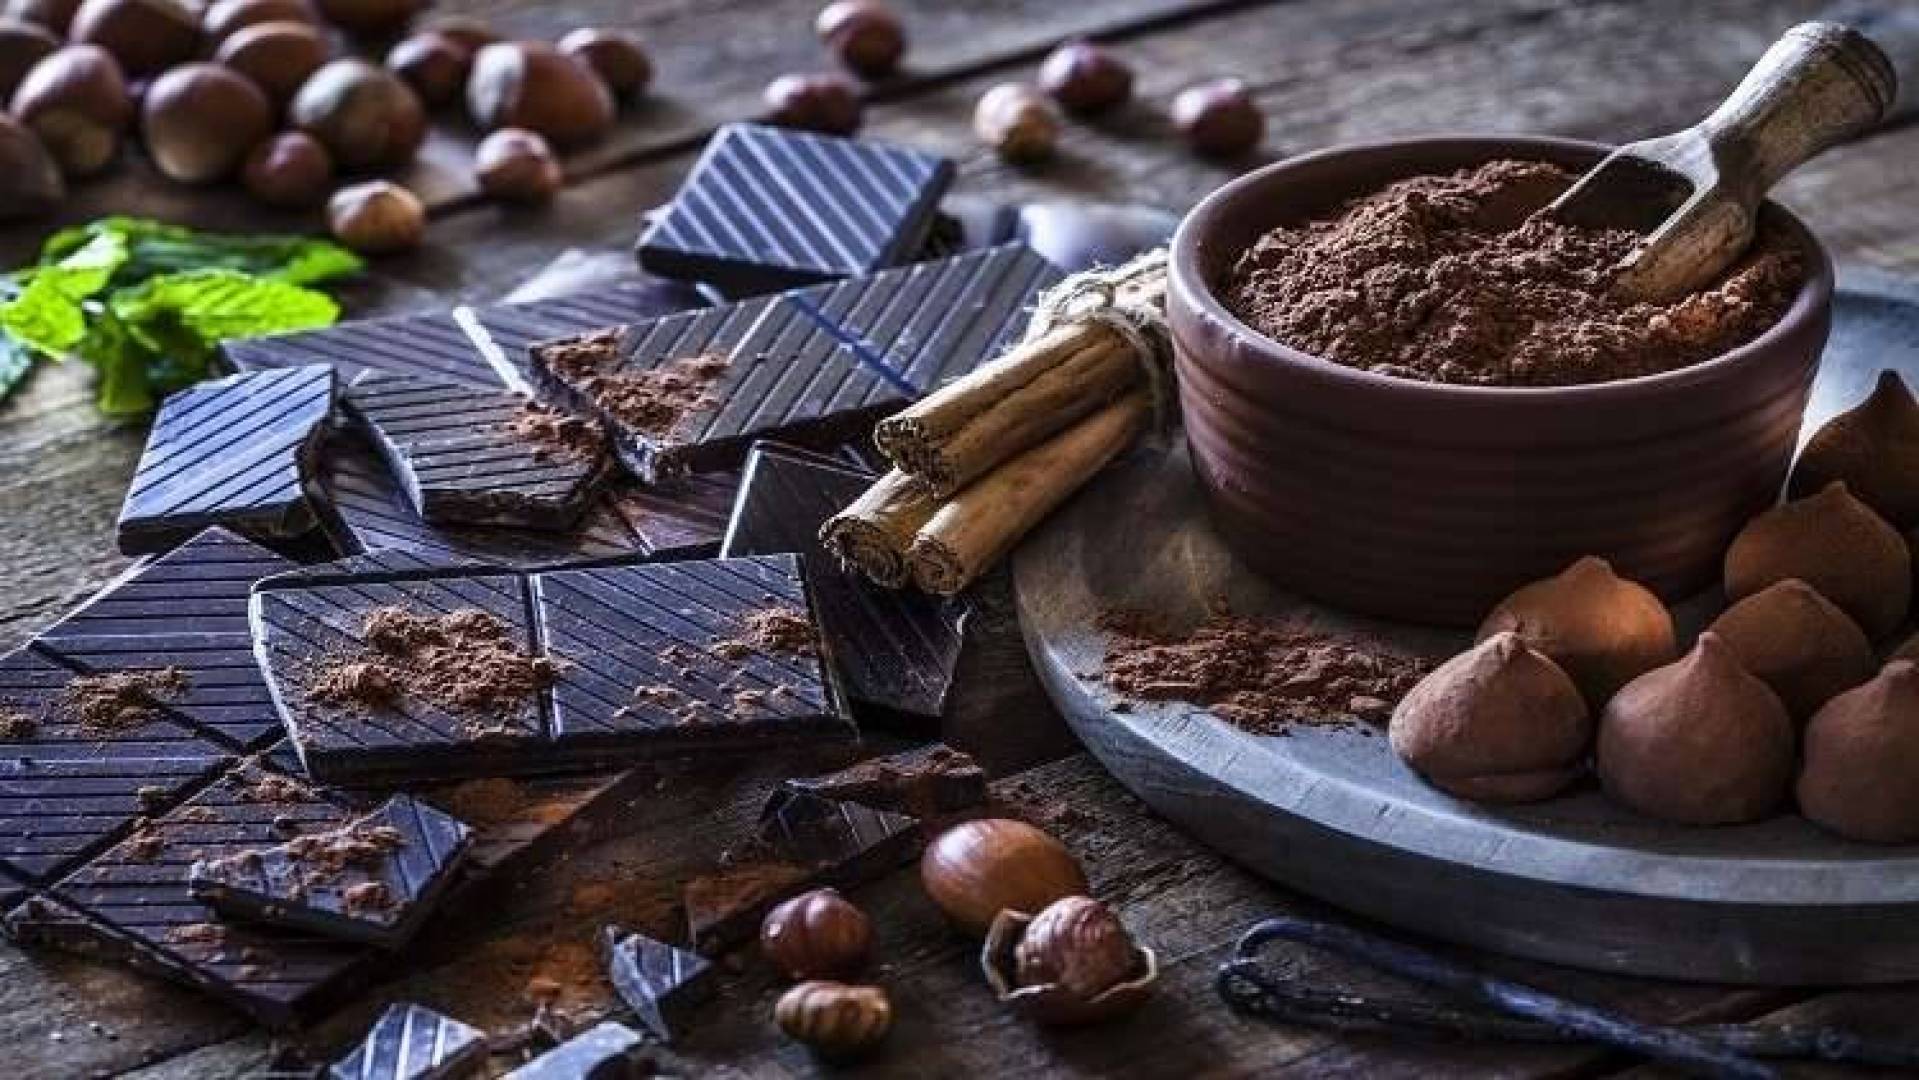 تنشط الذاكرة وتحسن المزاج والعديد من الفوائد التي يجهلها عشاق الشوكولاته الداكنة